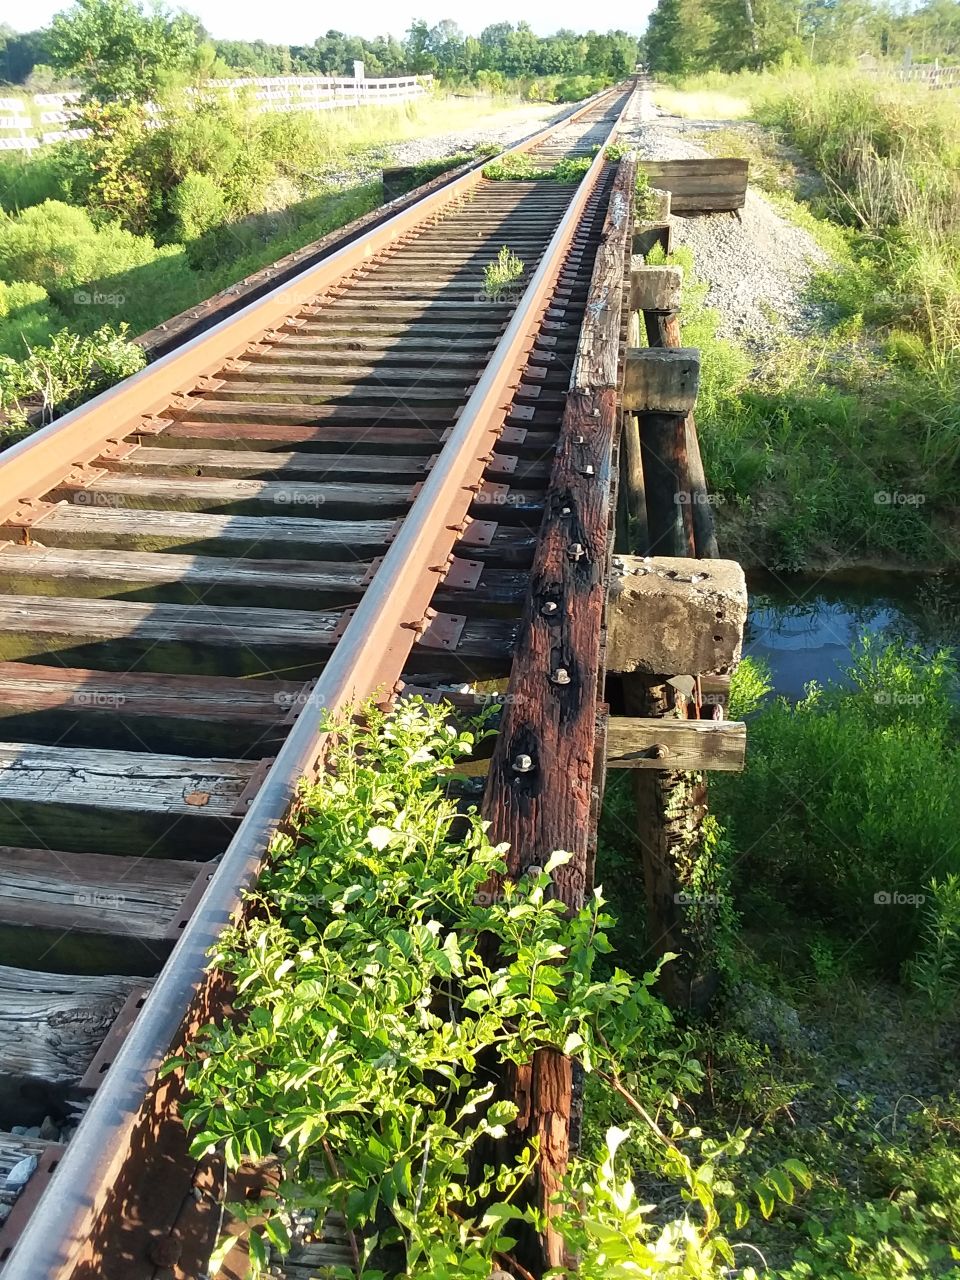 Mississippi rail